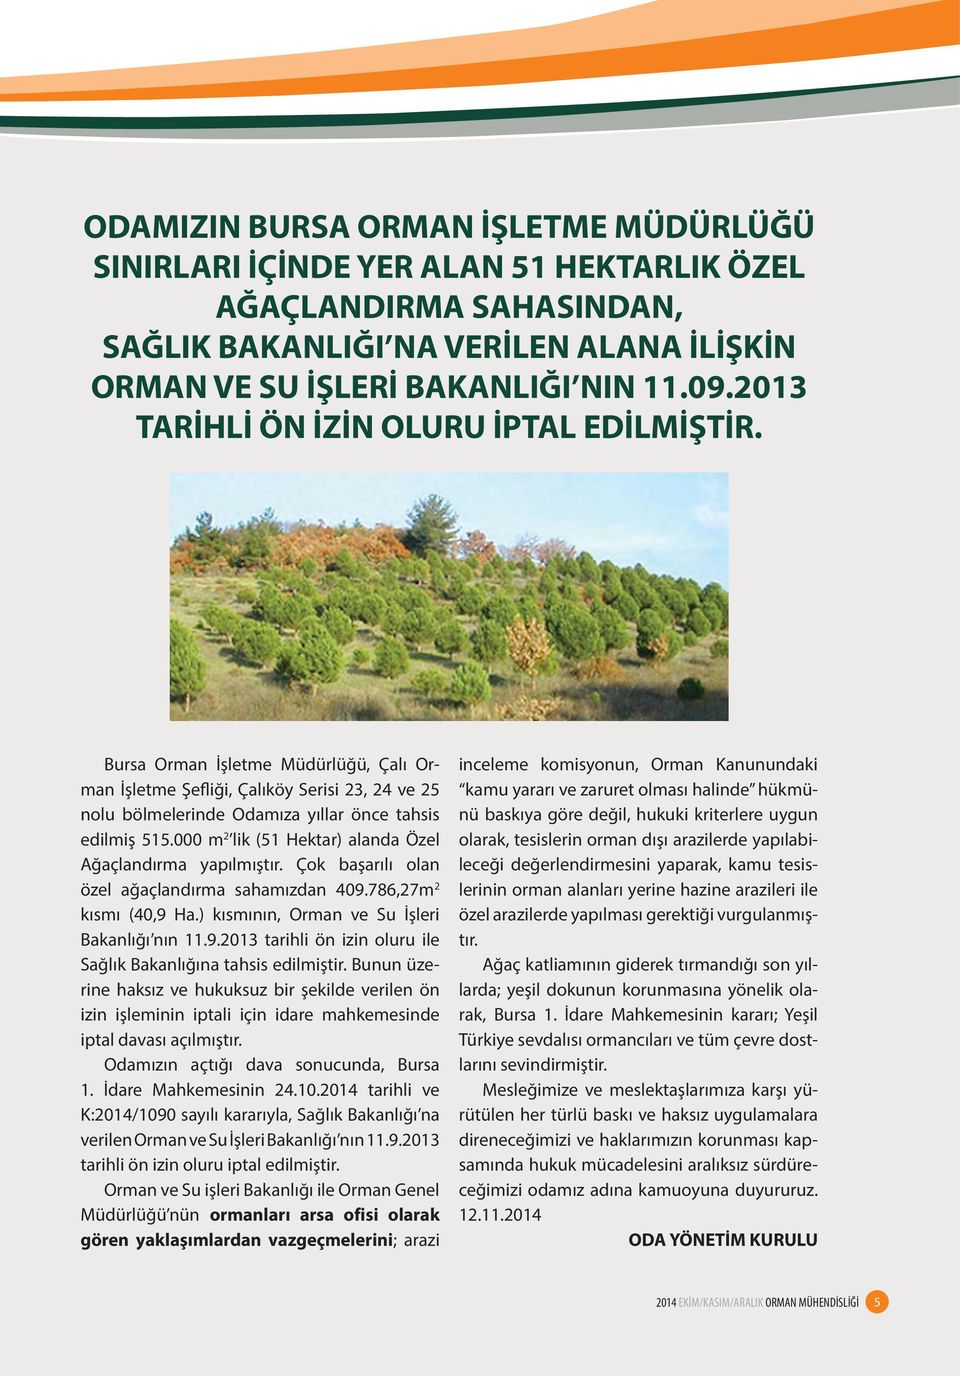 000 m 2 lik (51 Hektar) alanda Özel Ağaçlandırma yapılmıştır. Çok başarılı olan özel ağaçlandırma sahamızdan 409.786,27m 2 kısmı (40,9 Ha.) kısmının, Orman ve Su İşleri Bakanlığı nın 11.9.2013 tarihli ön izin oluru ile Sağlık Bakanlığına tahsis edilmiştir.